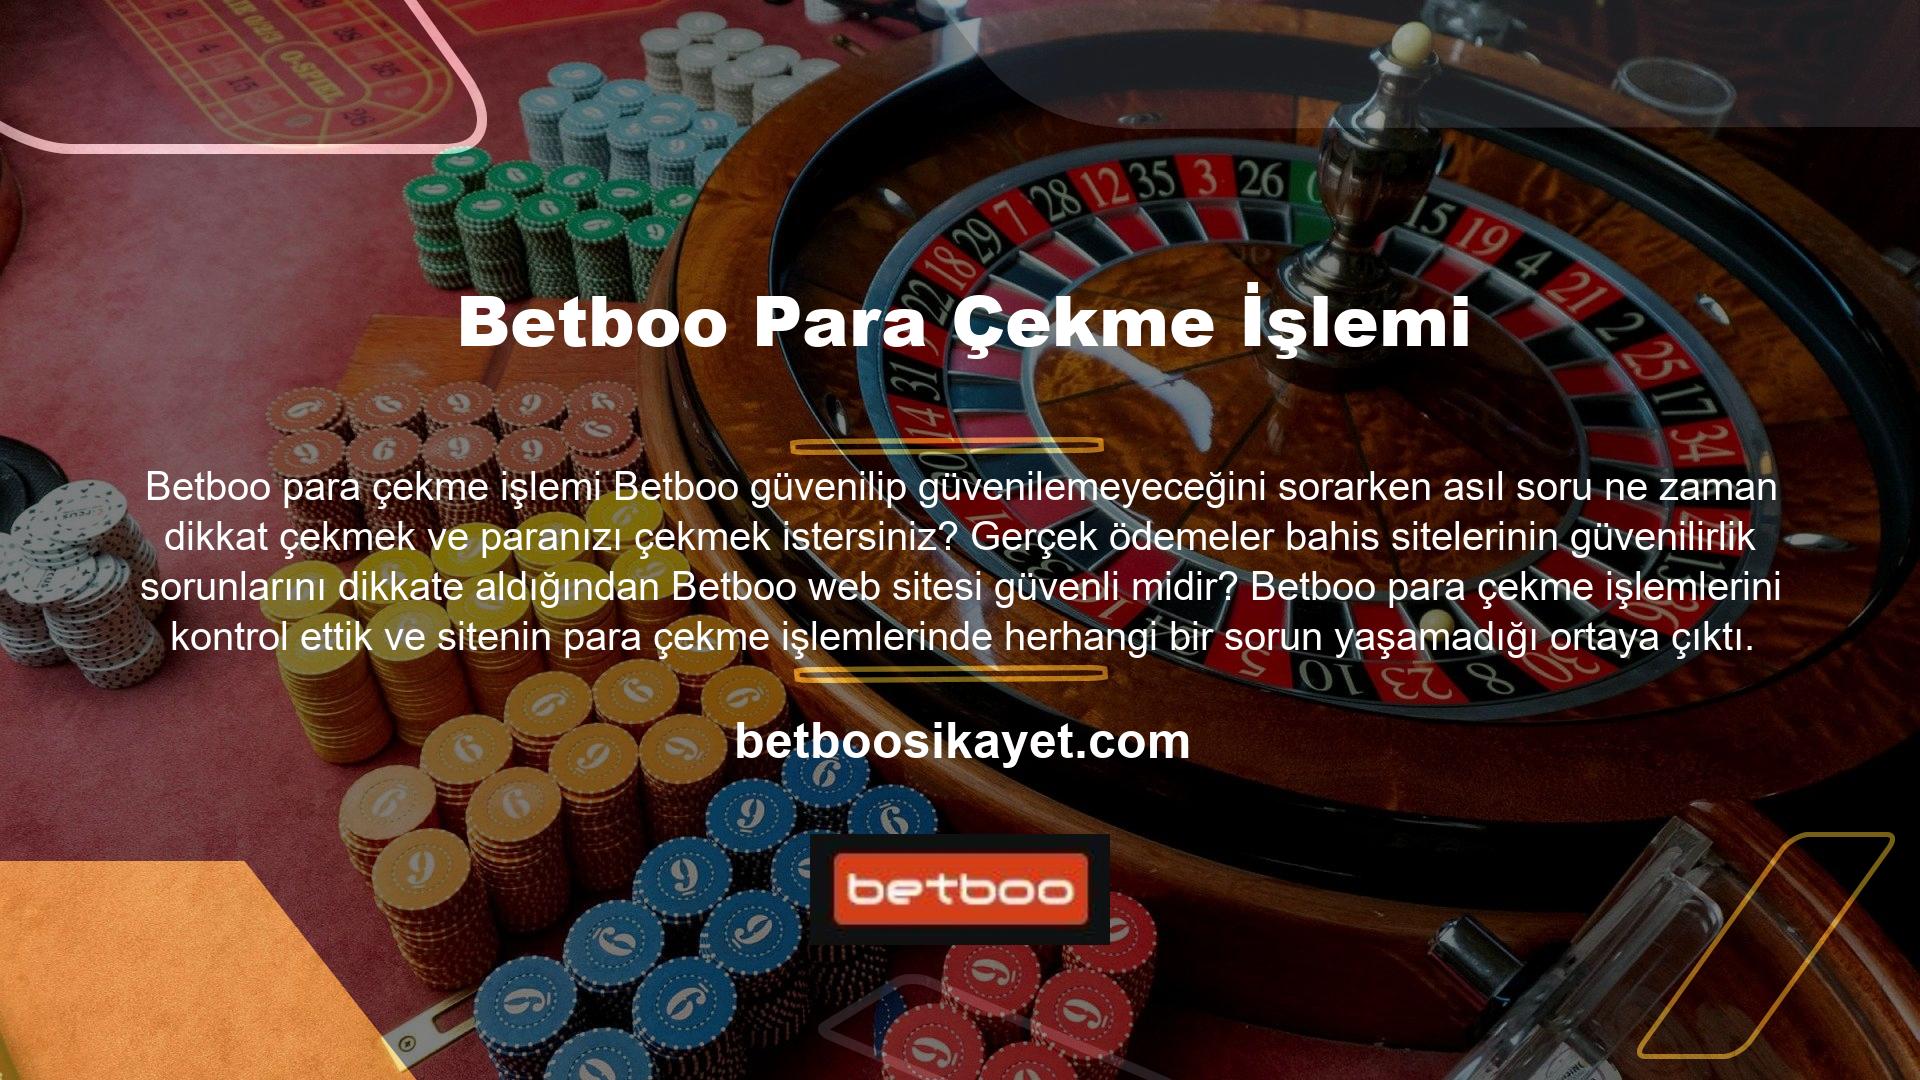 Yurtdışı casino sitelerini araştırdığımızda olağanüstü güvenilirlikleriyle ilgili "Betboo güvenilebilir mi?" sorusunu sordular